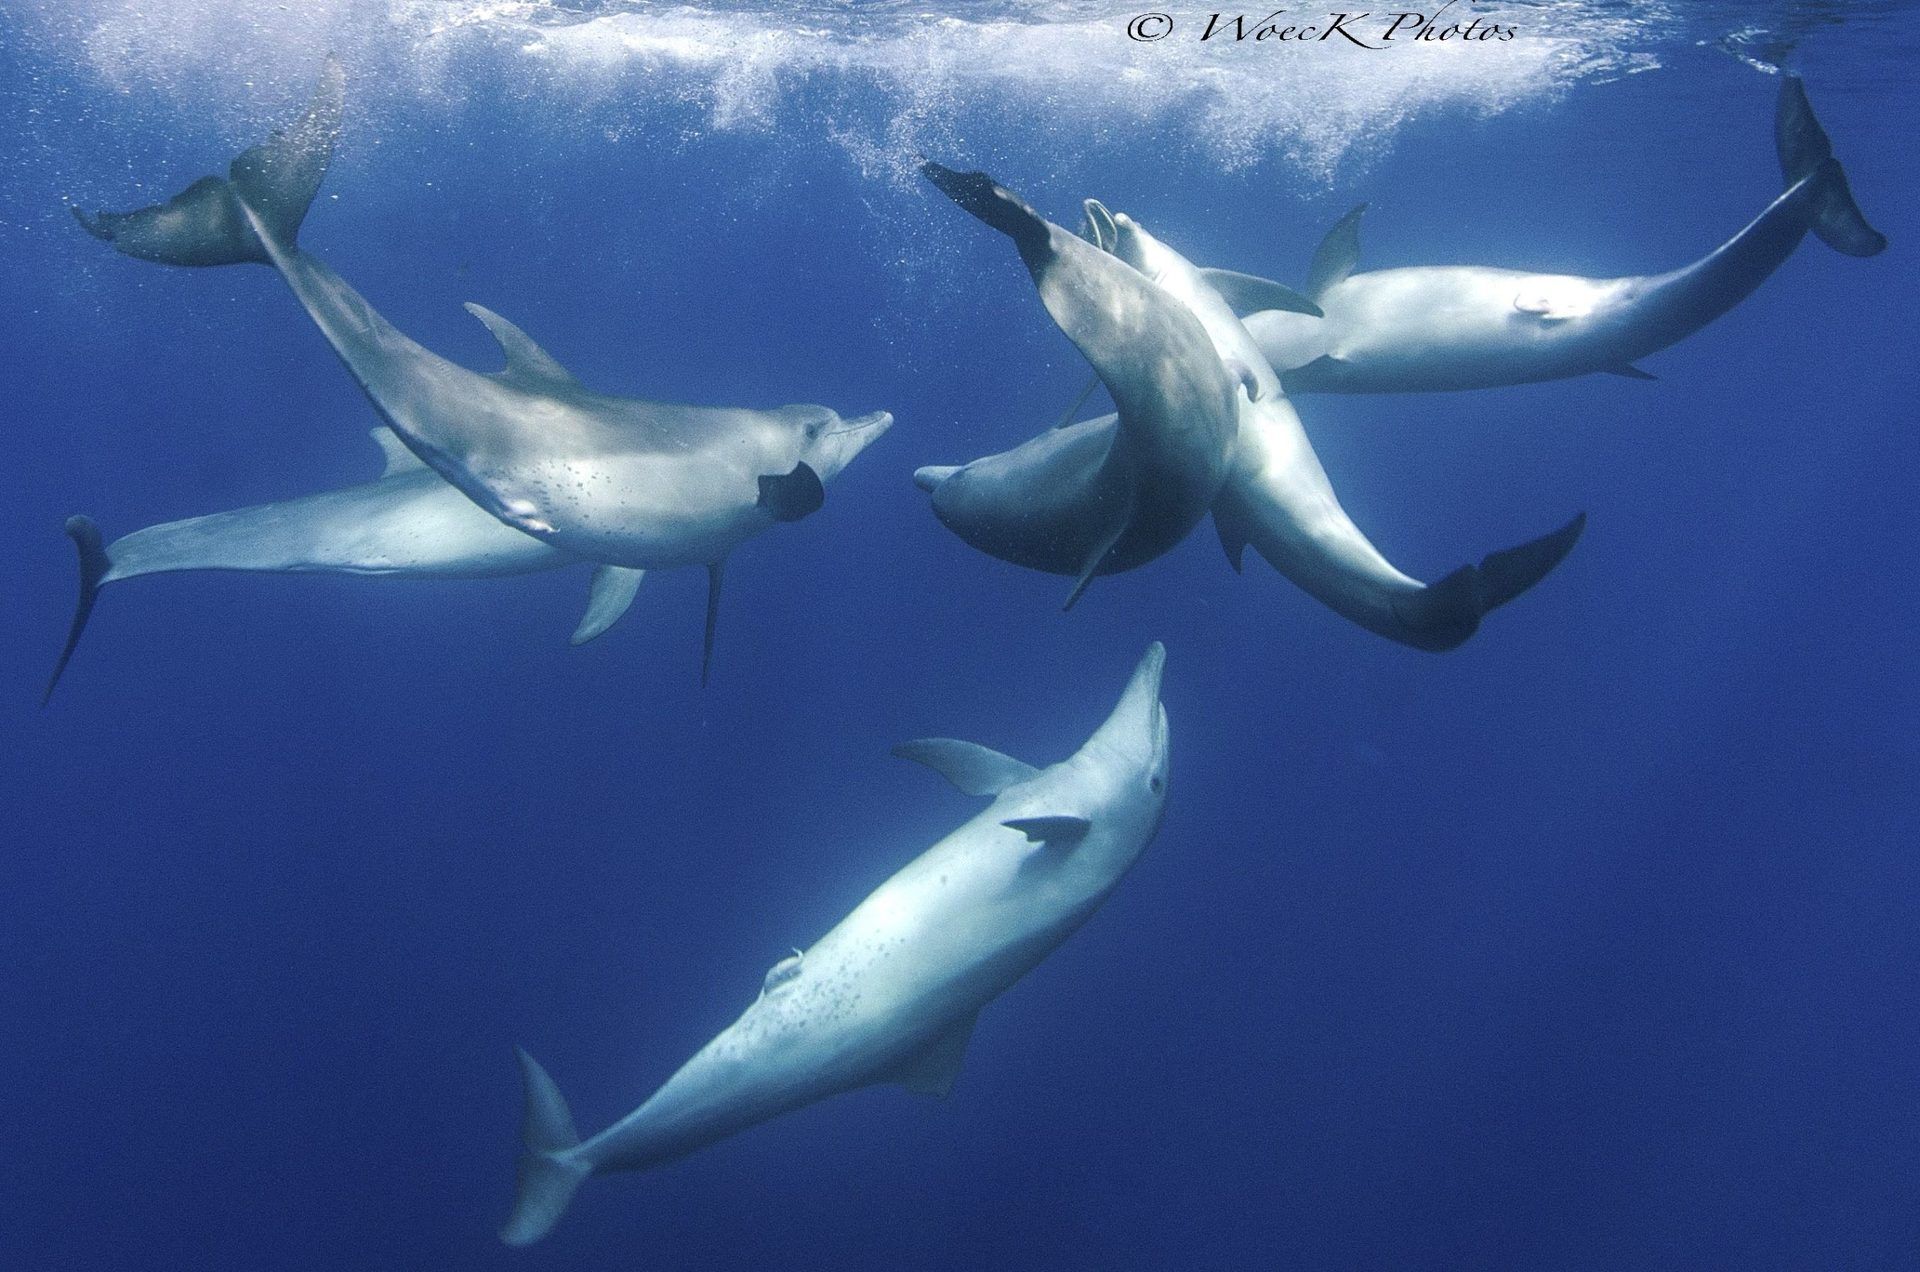 Les dauphins savent se reconnaître et se rassembler entre amis